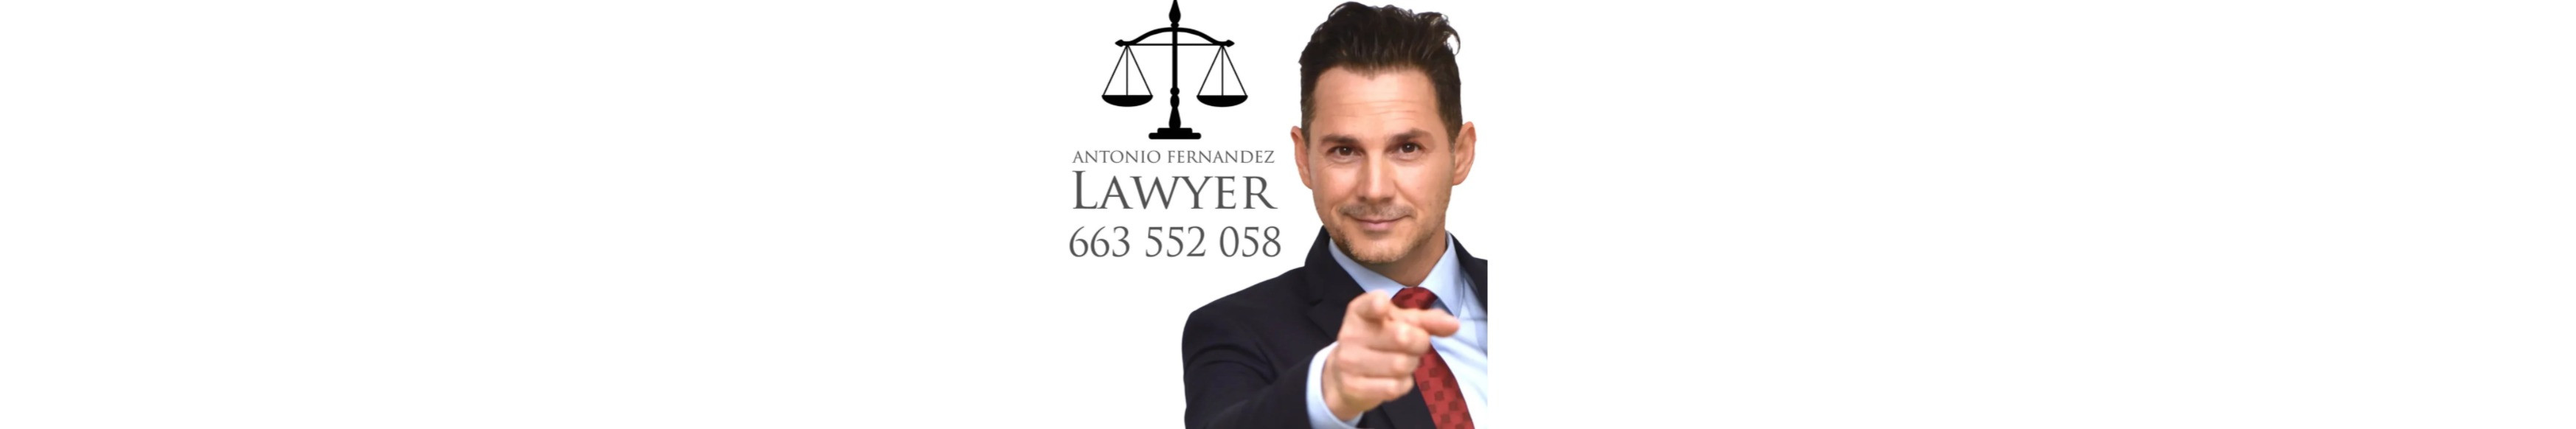 Despacho de abogados Antonio Fernandez